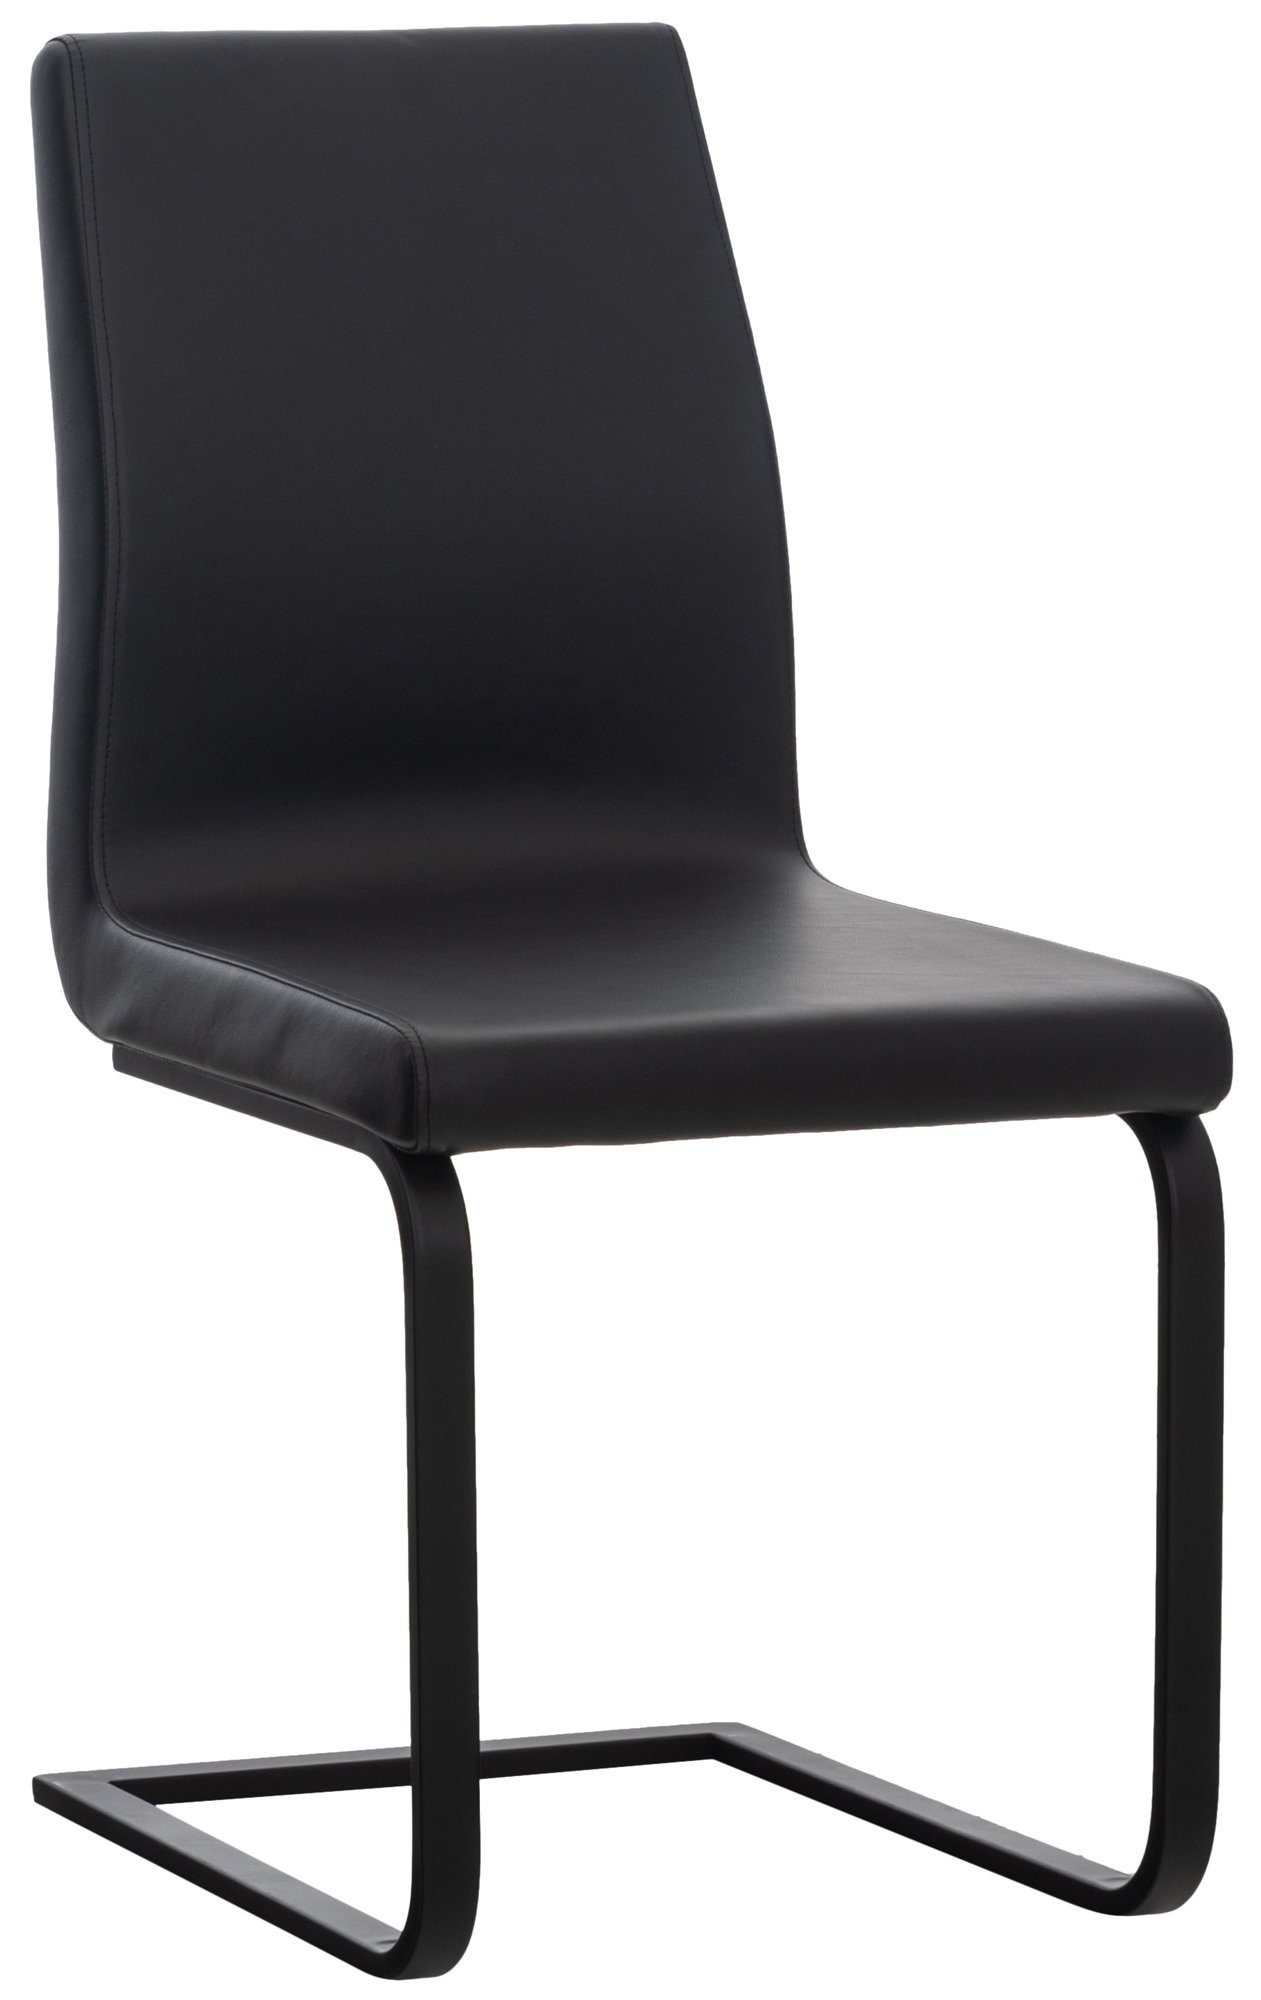 TPFLiving Esszimmerstuhl Bellle mit hochwertig gepolsterter Sitzfläche - Konferenzstuhl (Küchenstuhl - Wohnzimmerstuhl - Freischwinger), Gestell: Metall matt schwarz - Sitzfläche: Kunstleder schwarz